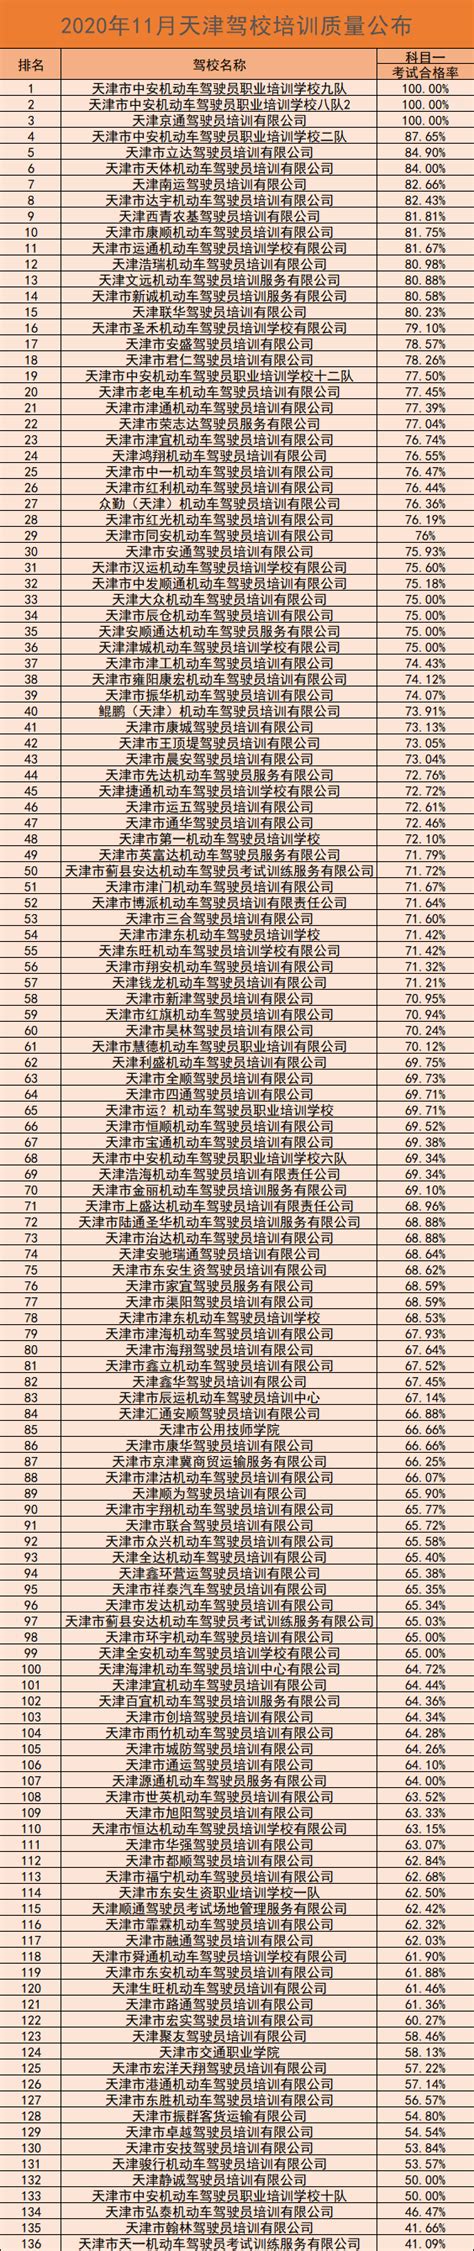 南京驾校6月份各学员考试合格率排行榜出炉-驾考一点通